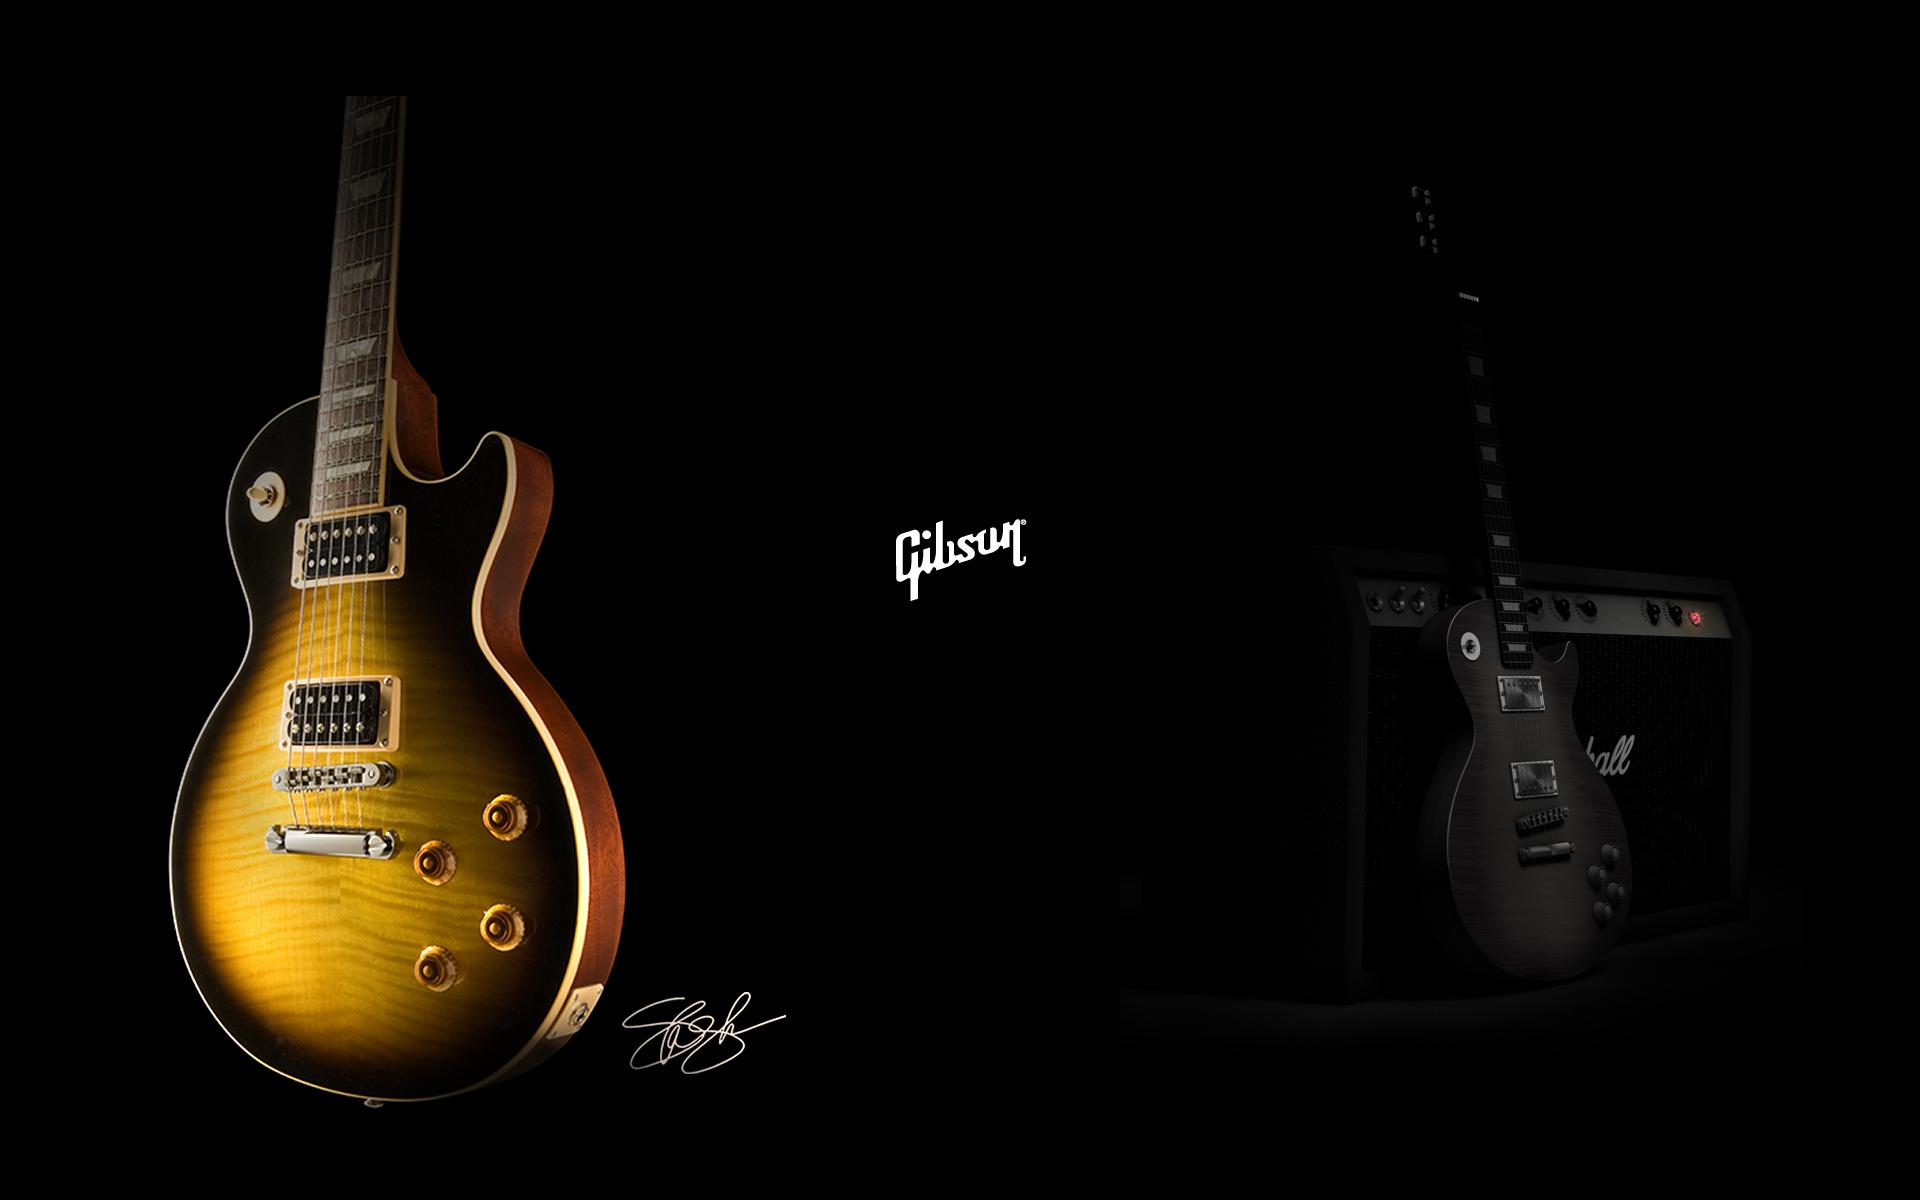 Gibson, guitars - desktop wallpaper